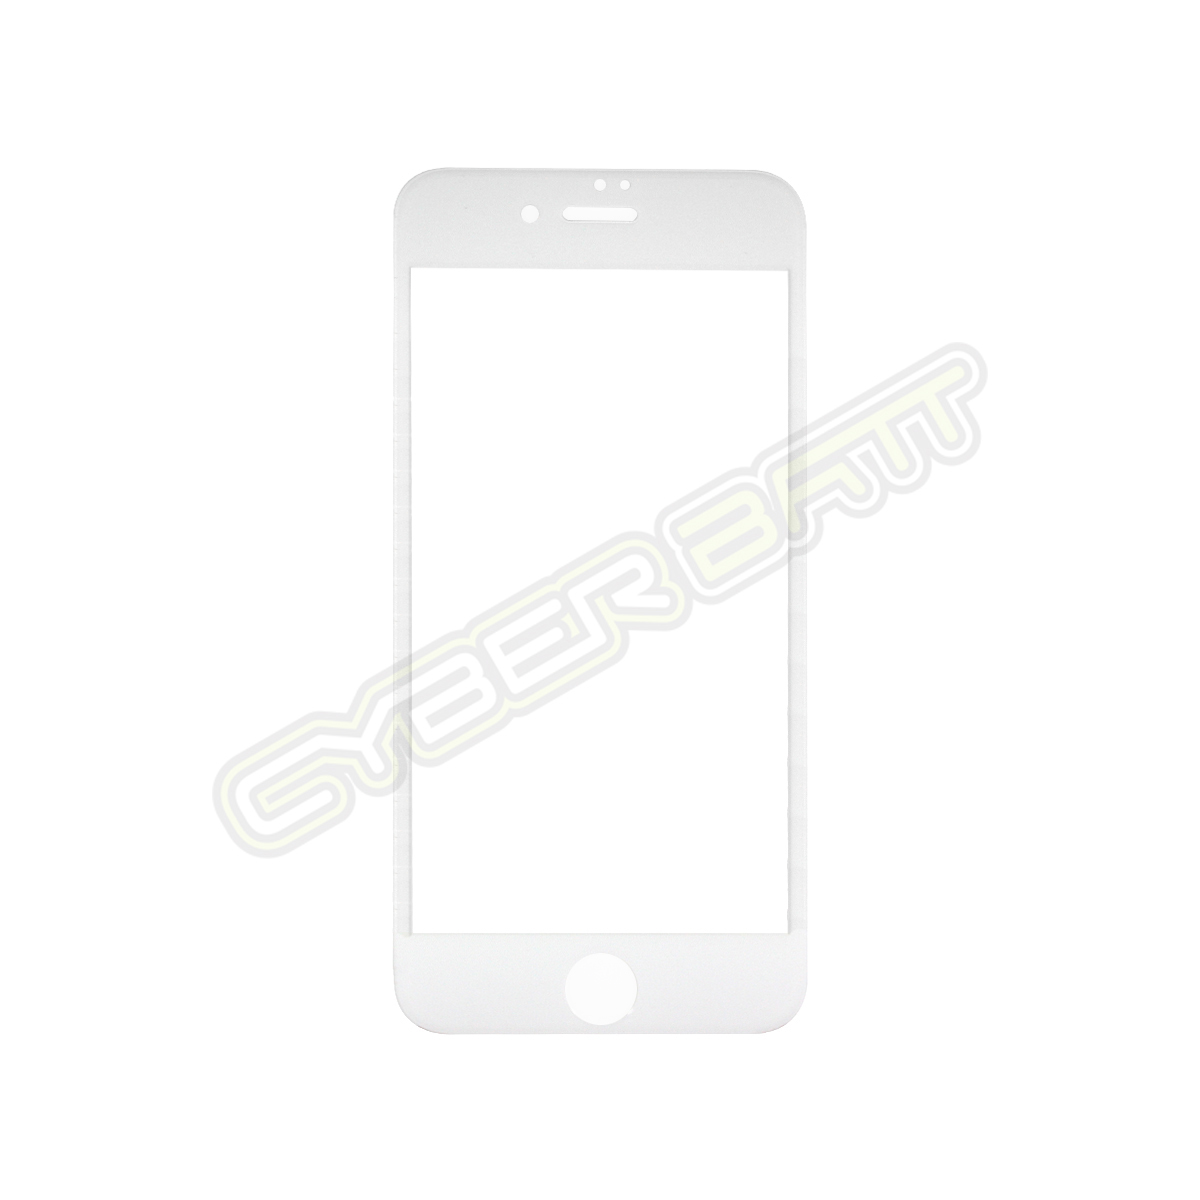 ฟิล์มกระจกกันรอย iPhone 7 Plus ขอบแข็ง สีขาว  (CYBERBATT)